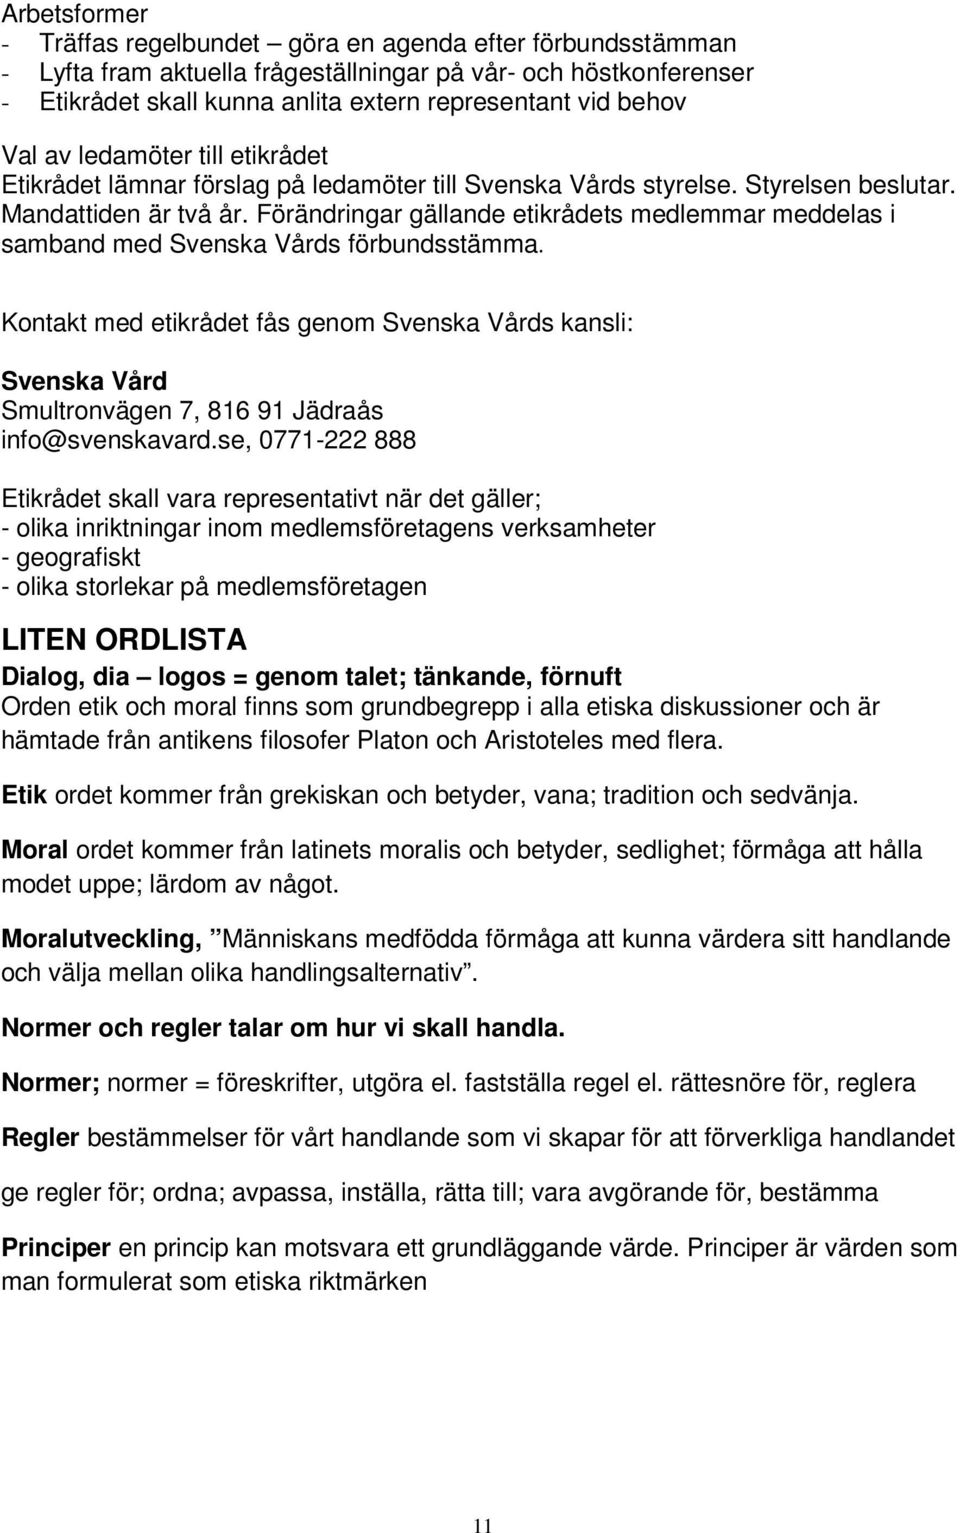 Förändringar gällande etikrådets medlemmar meddelas i samband med Svenska Vårds förbundsstämma.